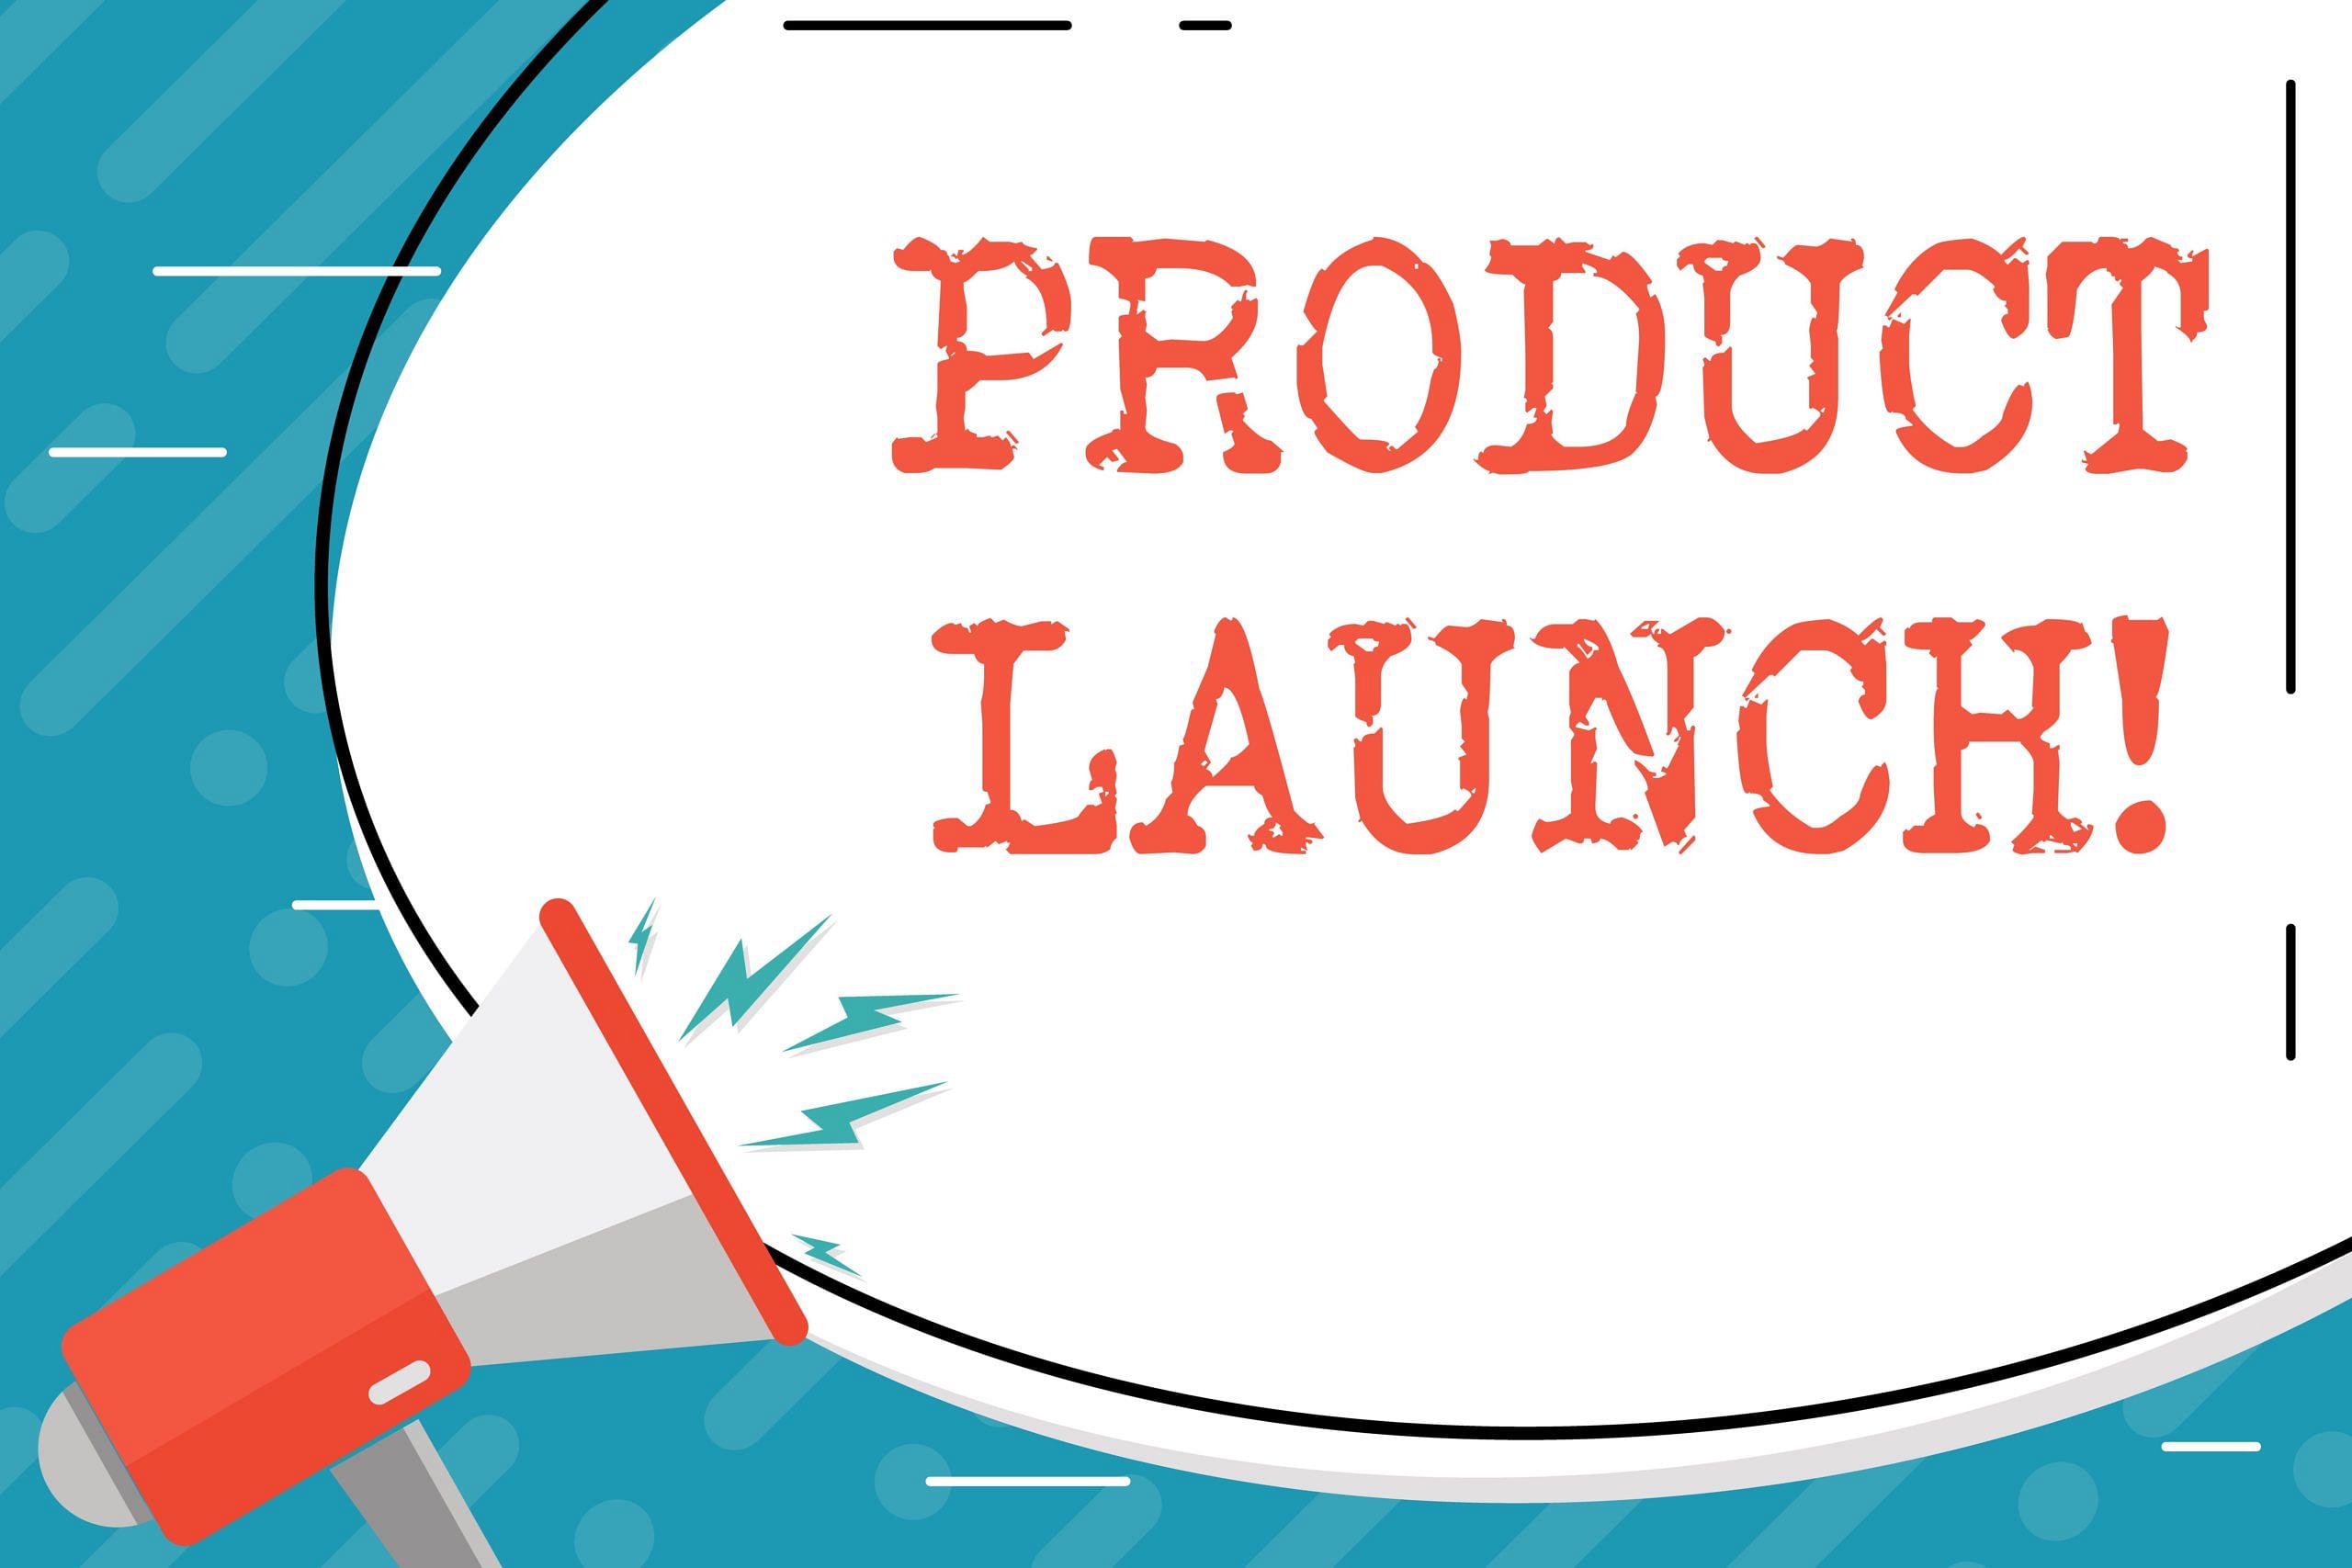 amazon product launch